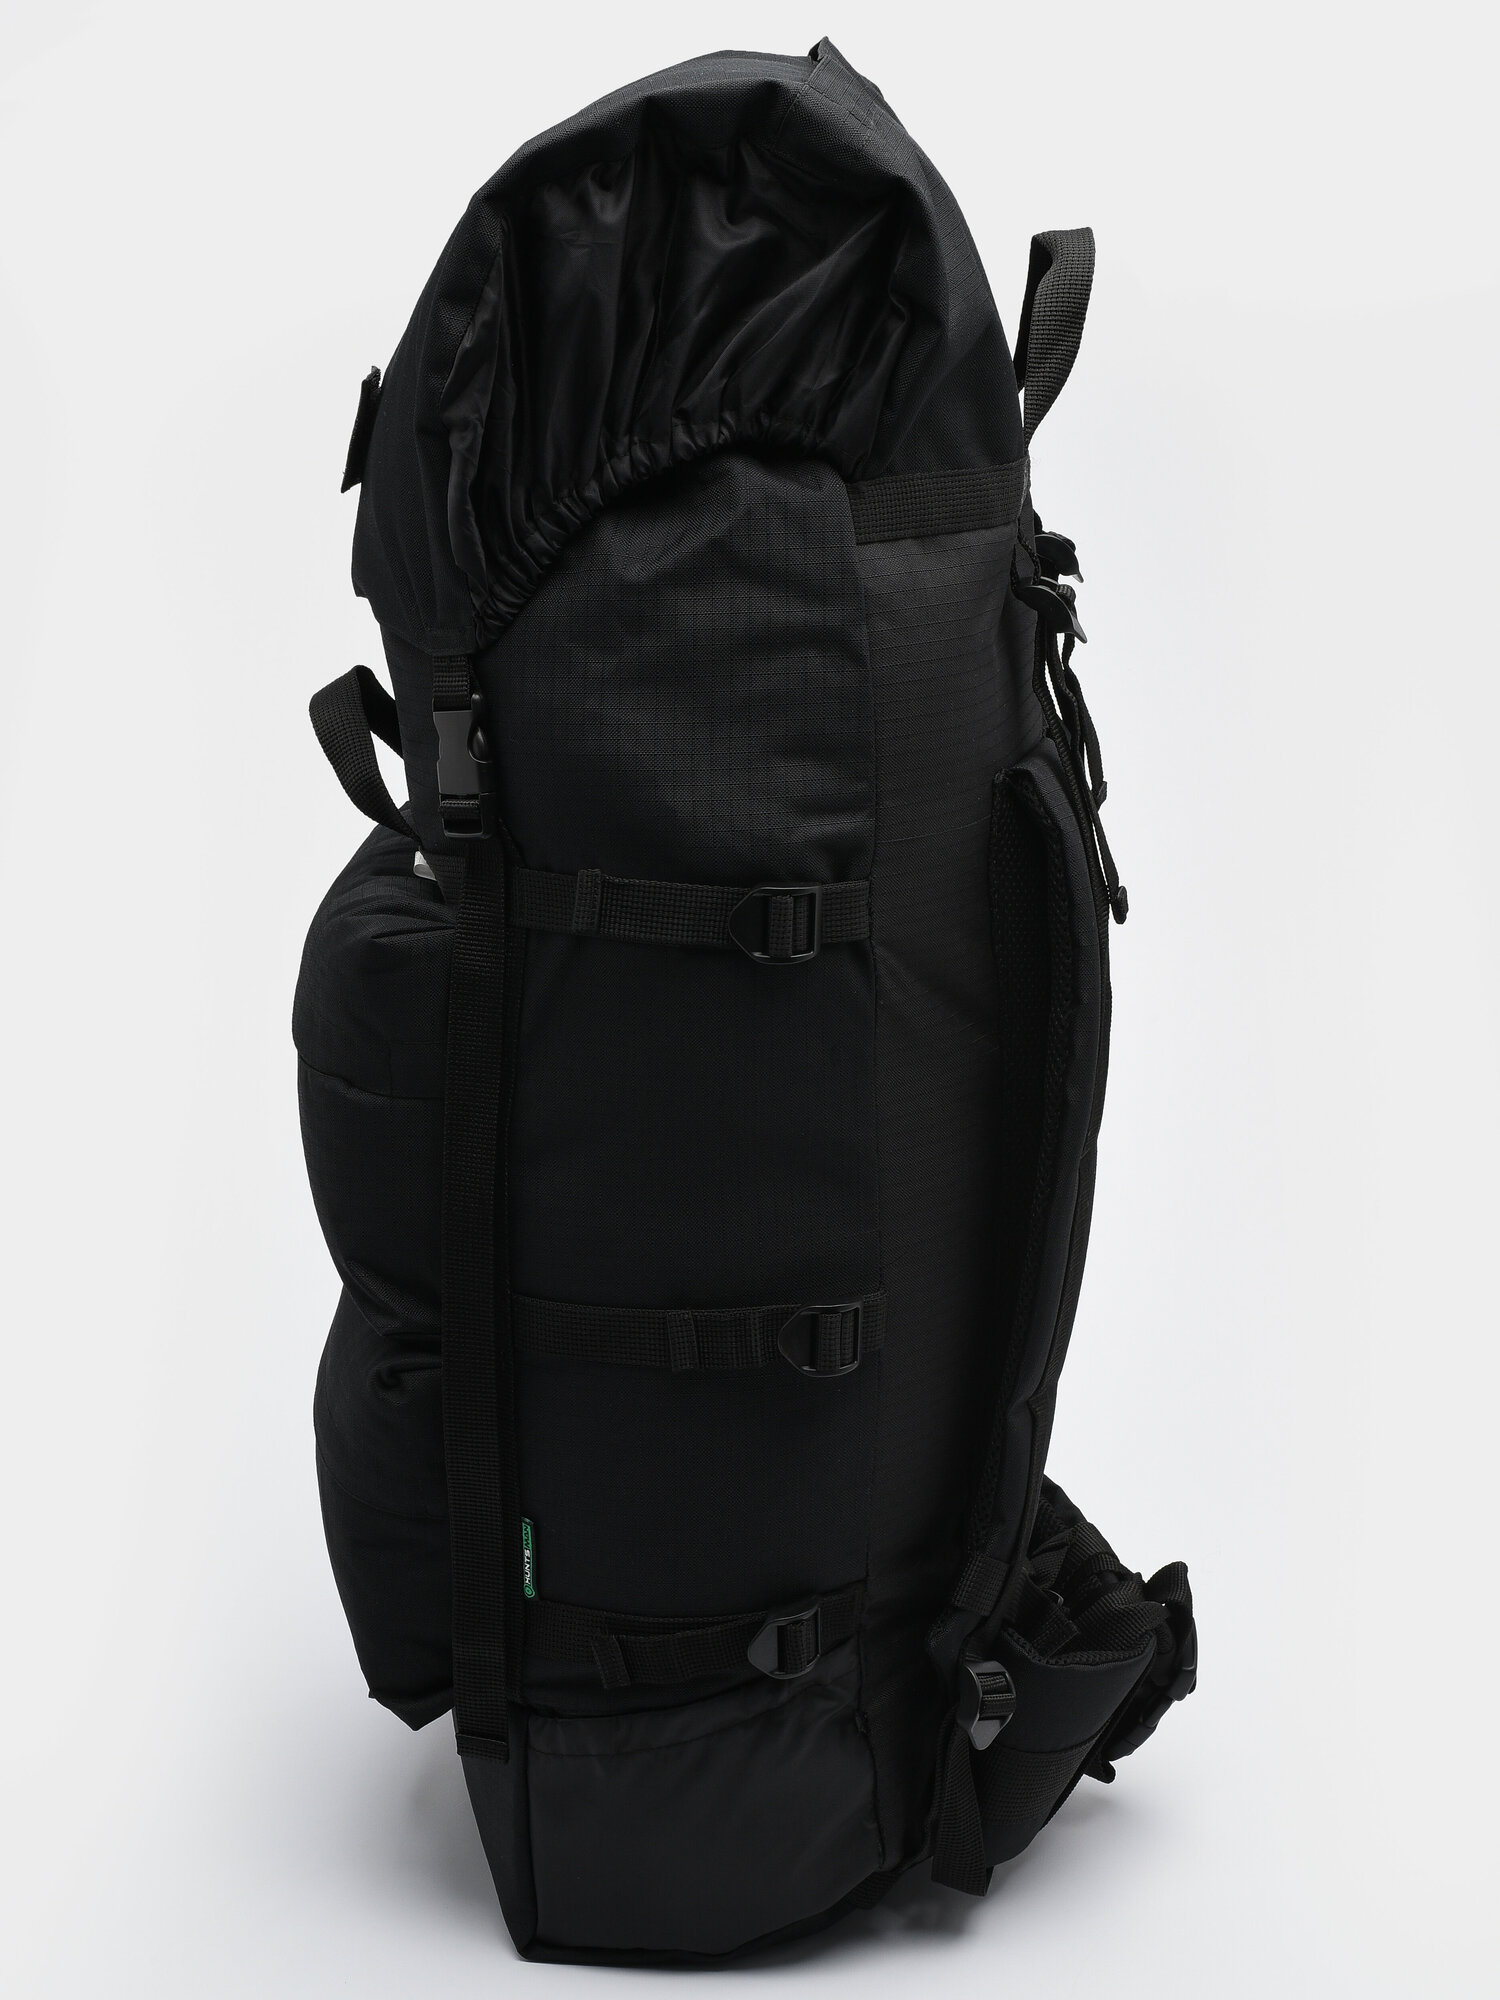 Рюкзак туристический, тактический Huntsman Пикбастон дорожный для путешествий, охотничий, походный, военный 100 л, ткань Оксфорд рипстоп, цвет черный